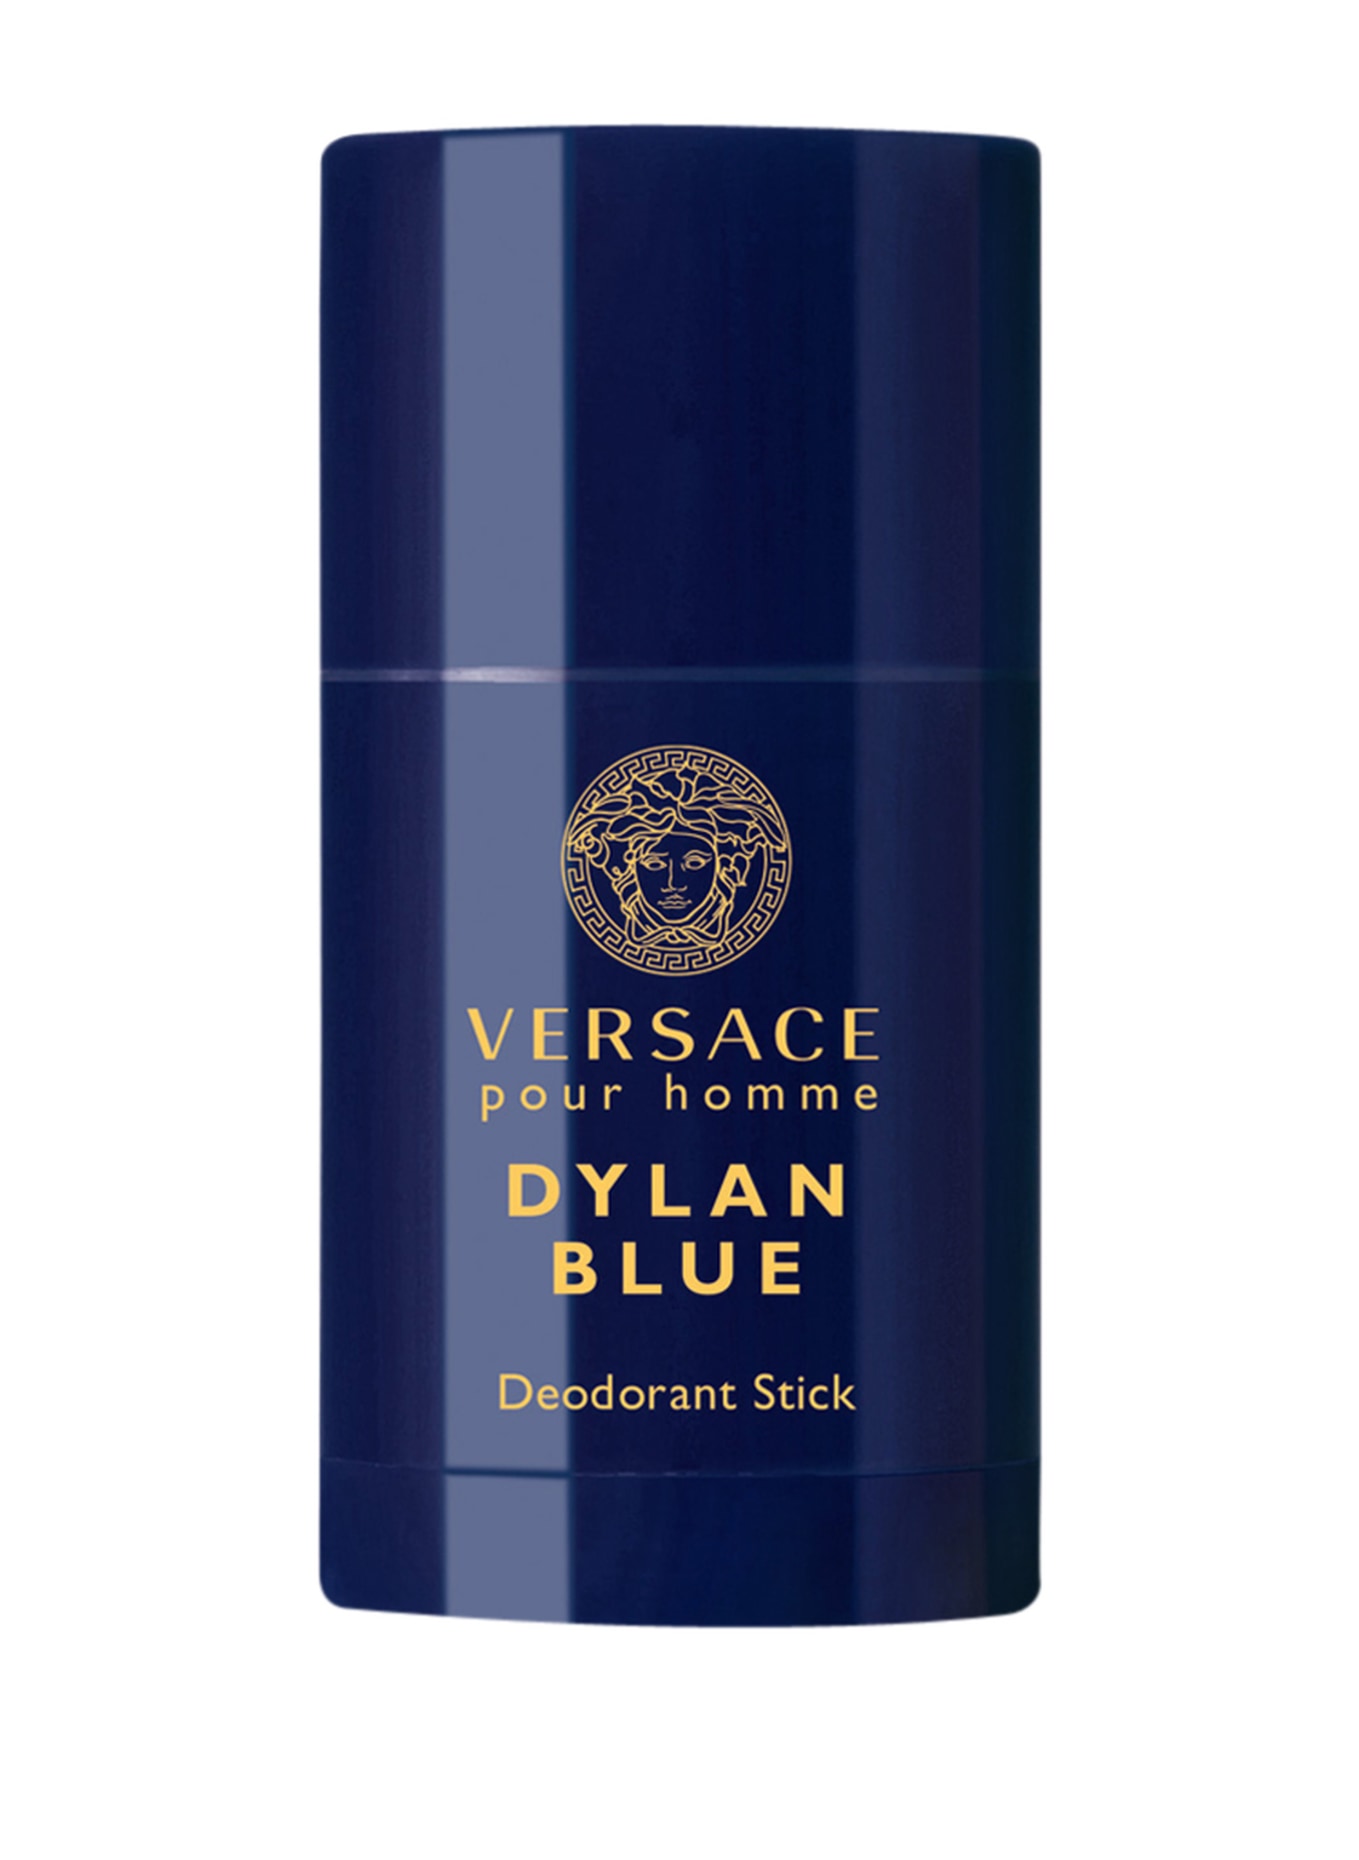 VERSACE DYLAN BLUE (Obrázek 1)